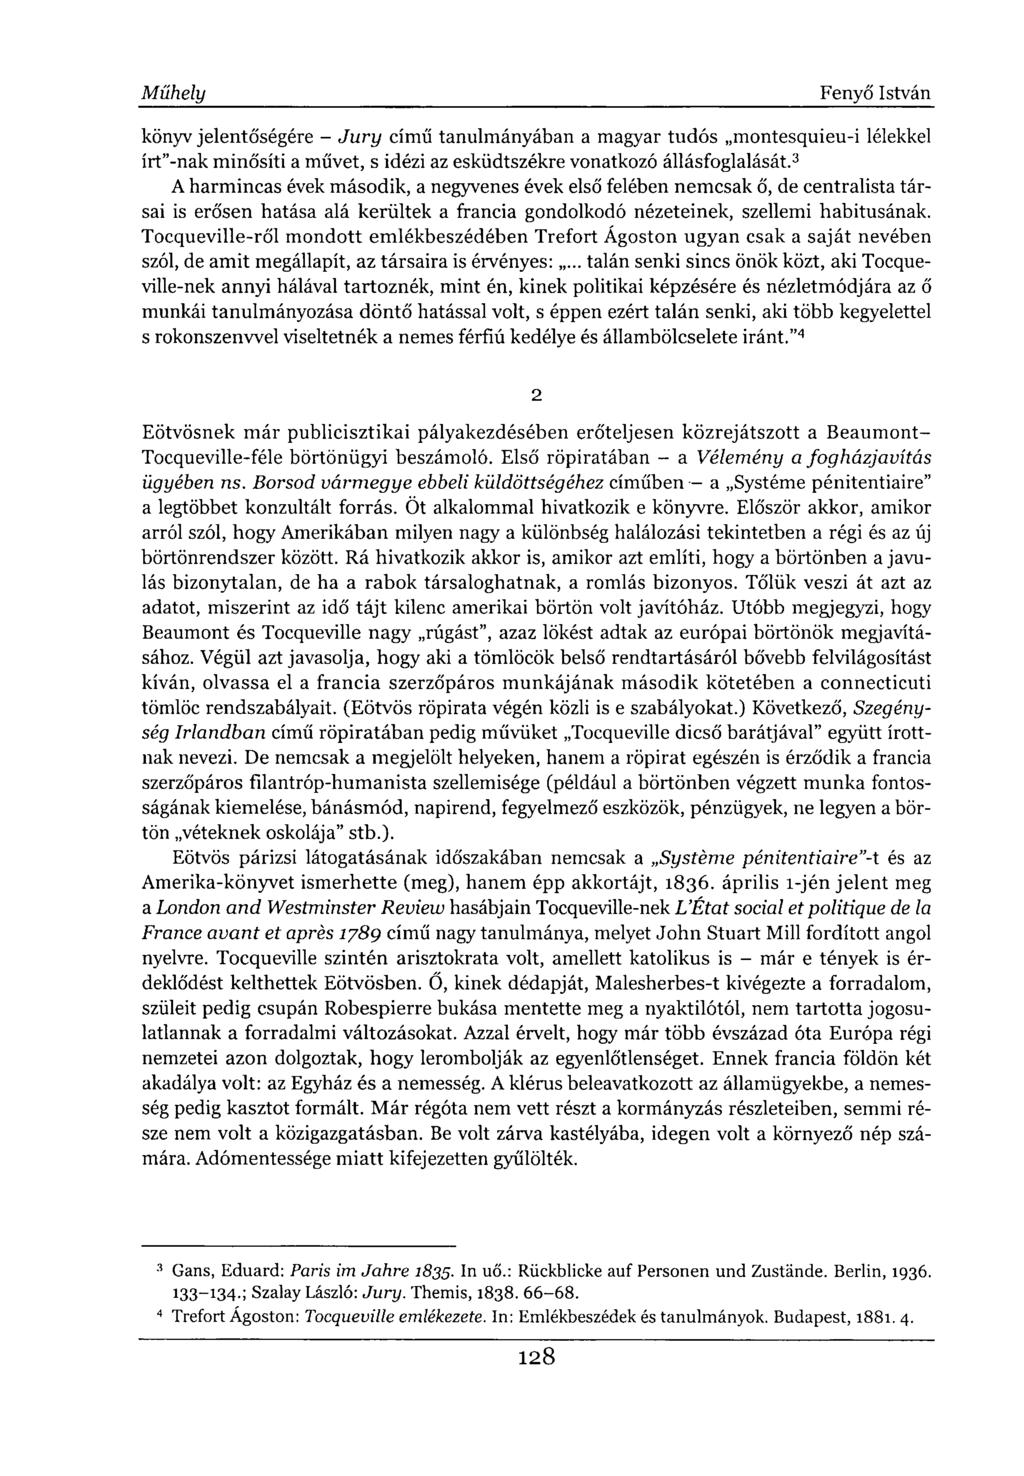 könyv jelentőségére - Jury című tanulmányában a magyar tudós montesquieu-i lélekkel írt"-nak minősíti a művet, s idézi az esküdtszékre vonatkozó állásfoglalását.